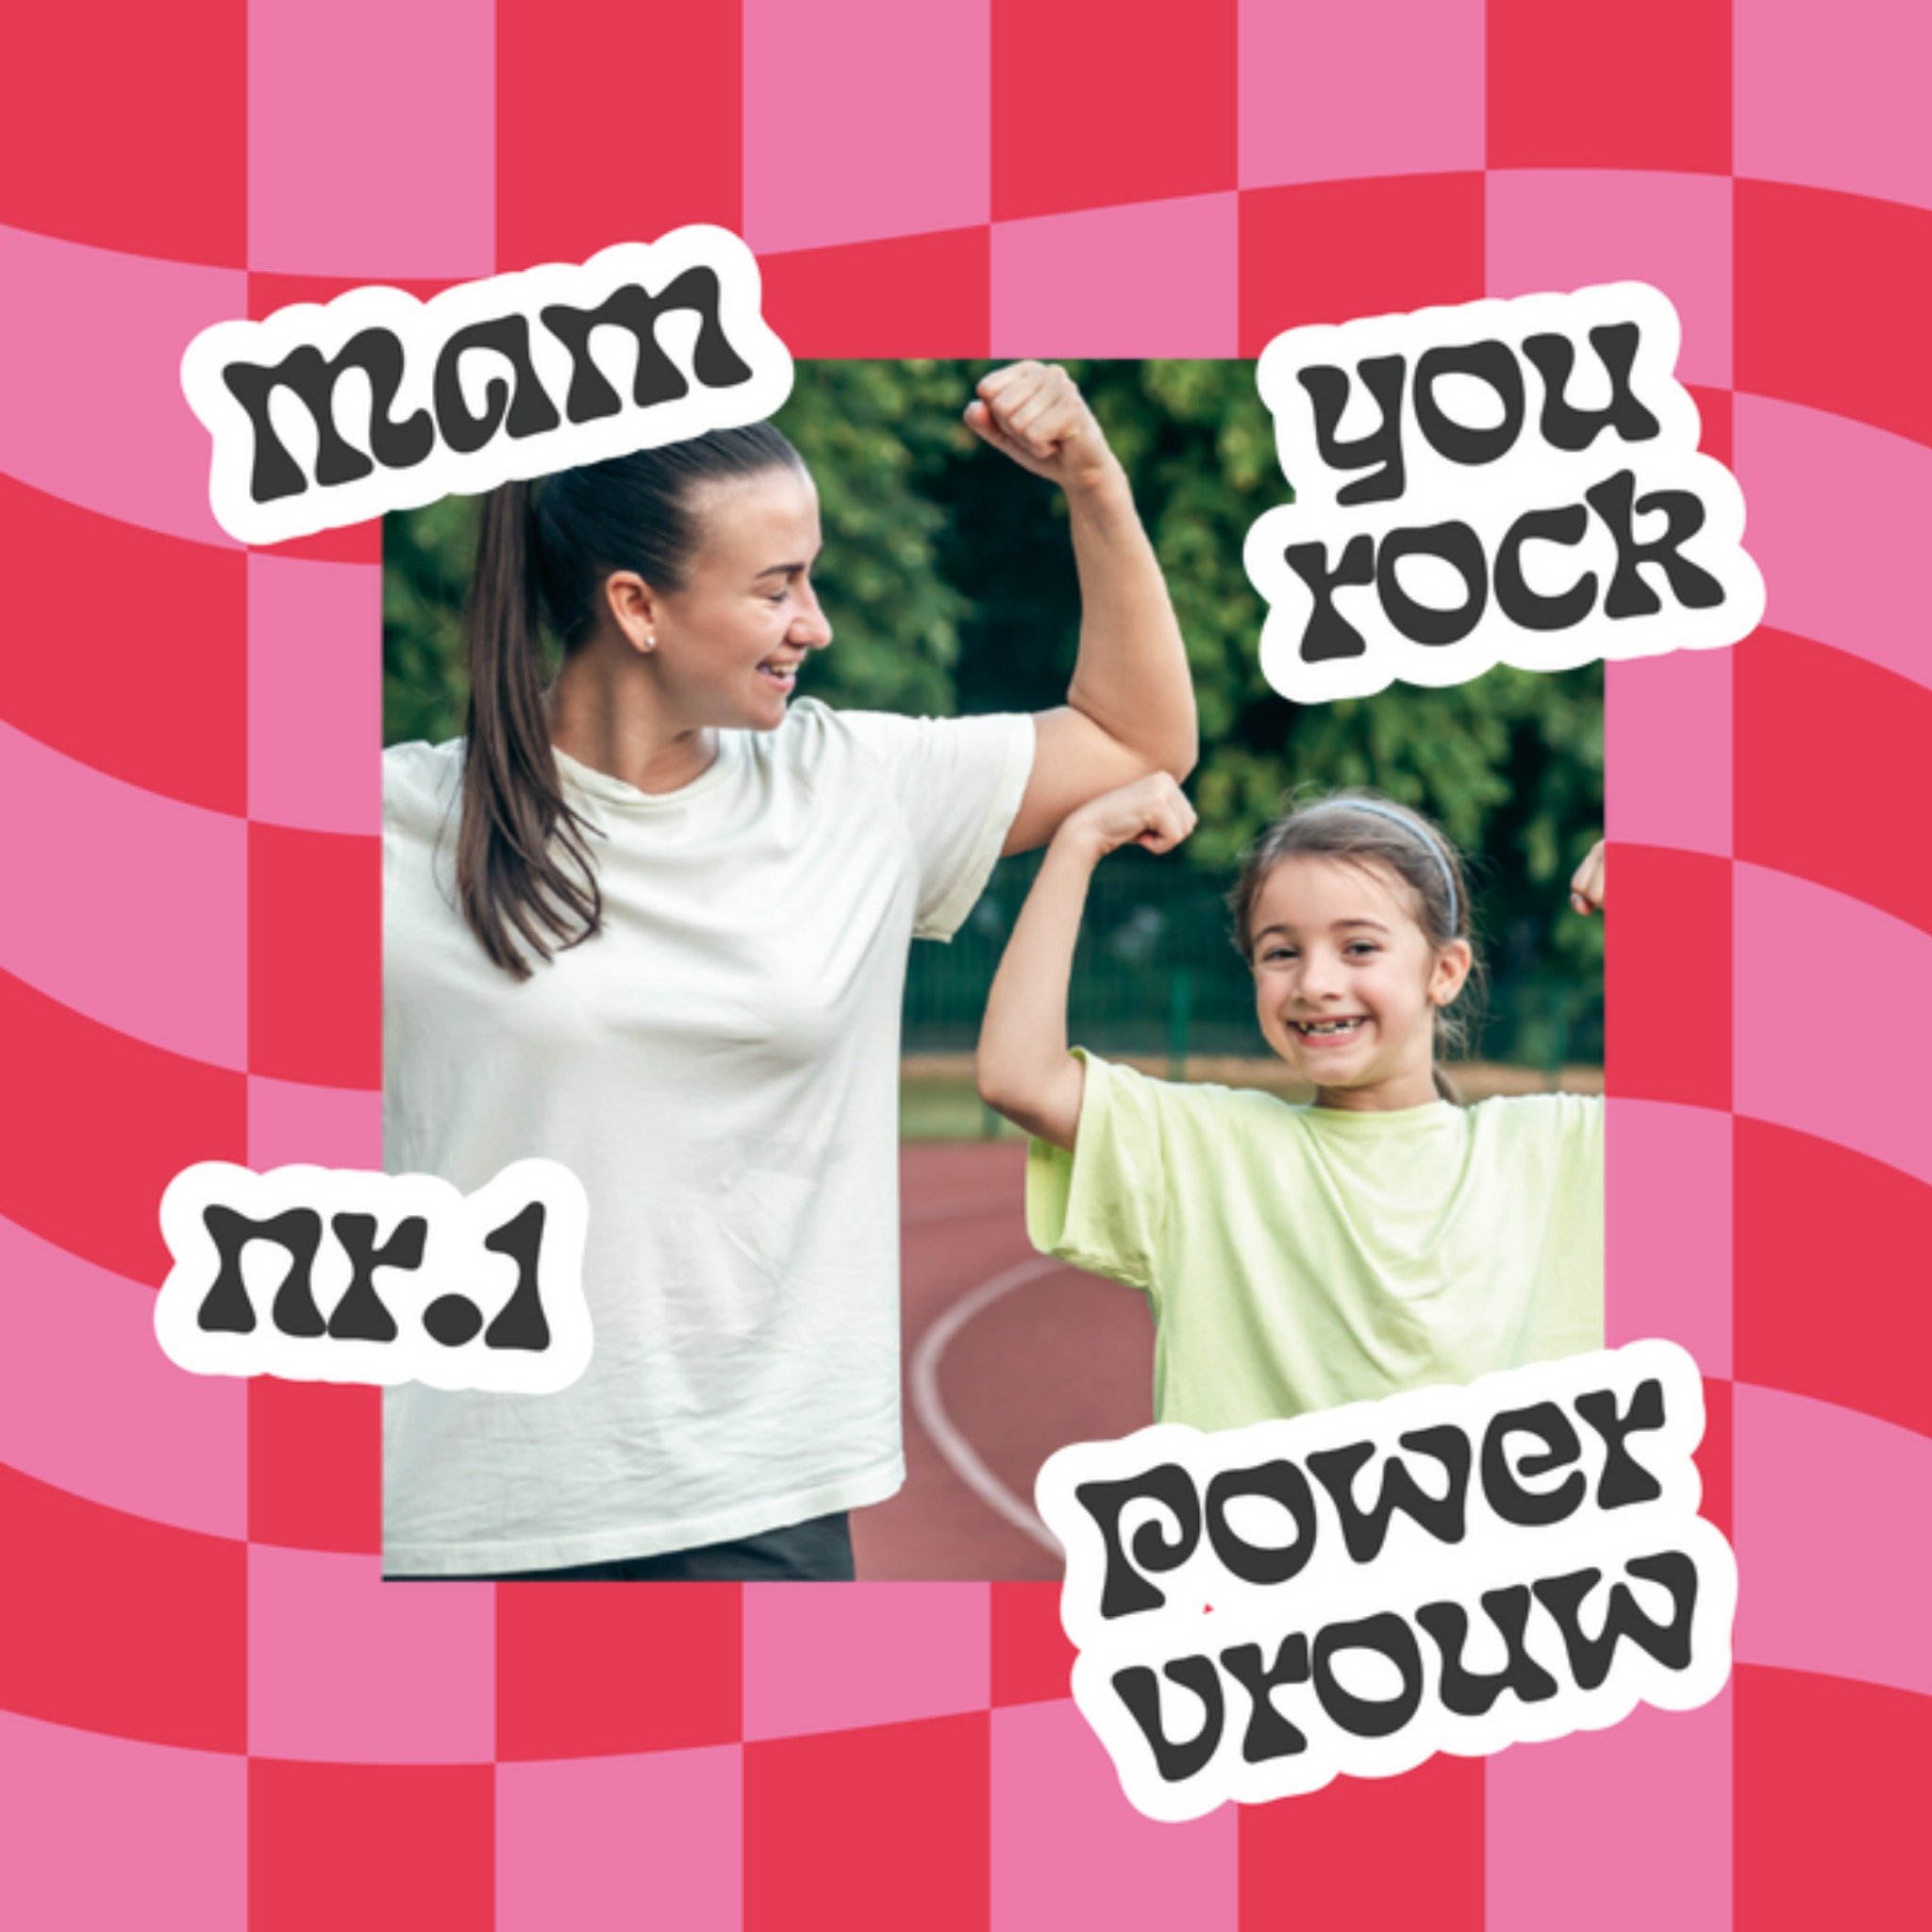 Moederdagkaart - Mam you rock nr.1 power vrouw - Golvend geruit patroon - Fotokaart